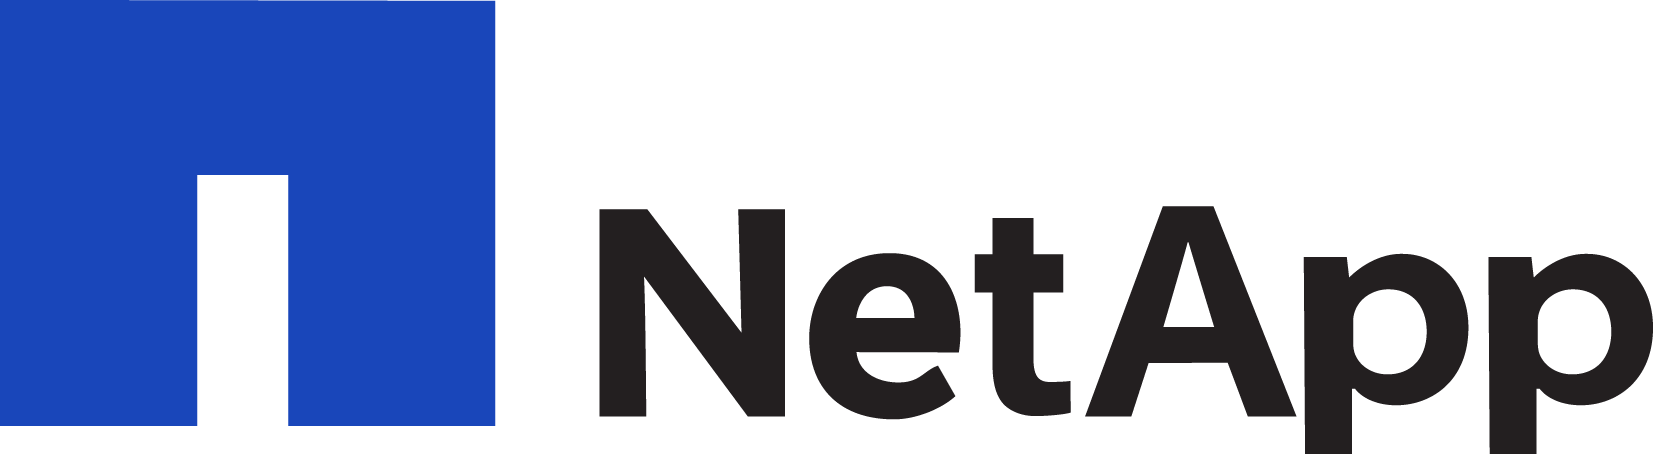 NetApp Logo png